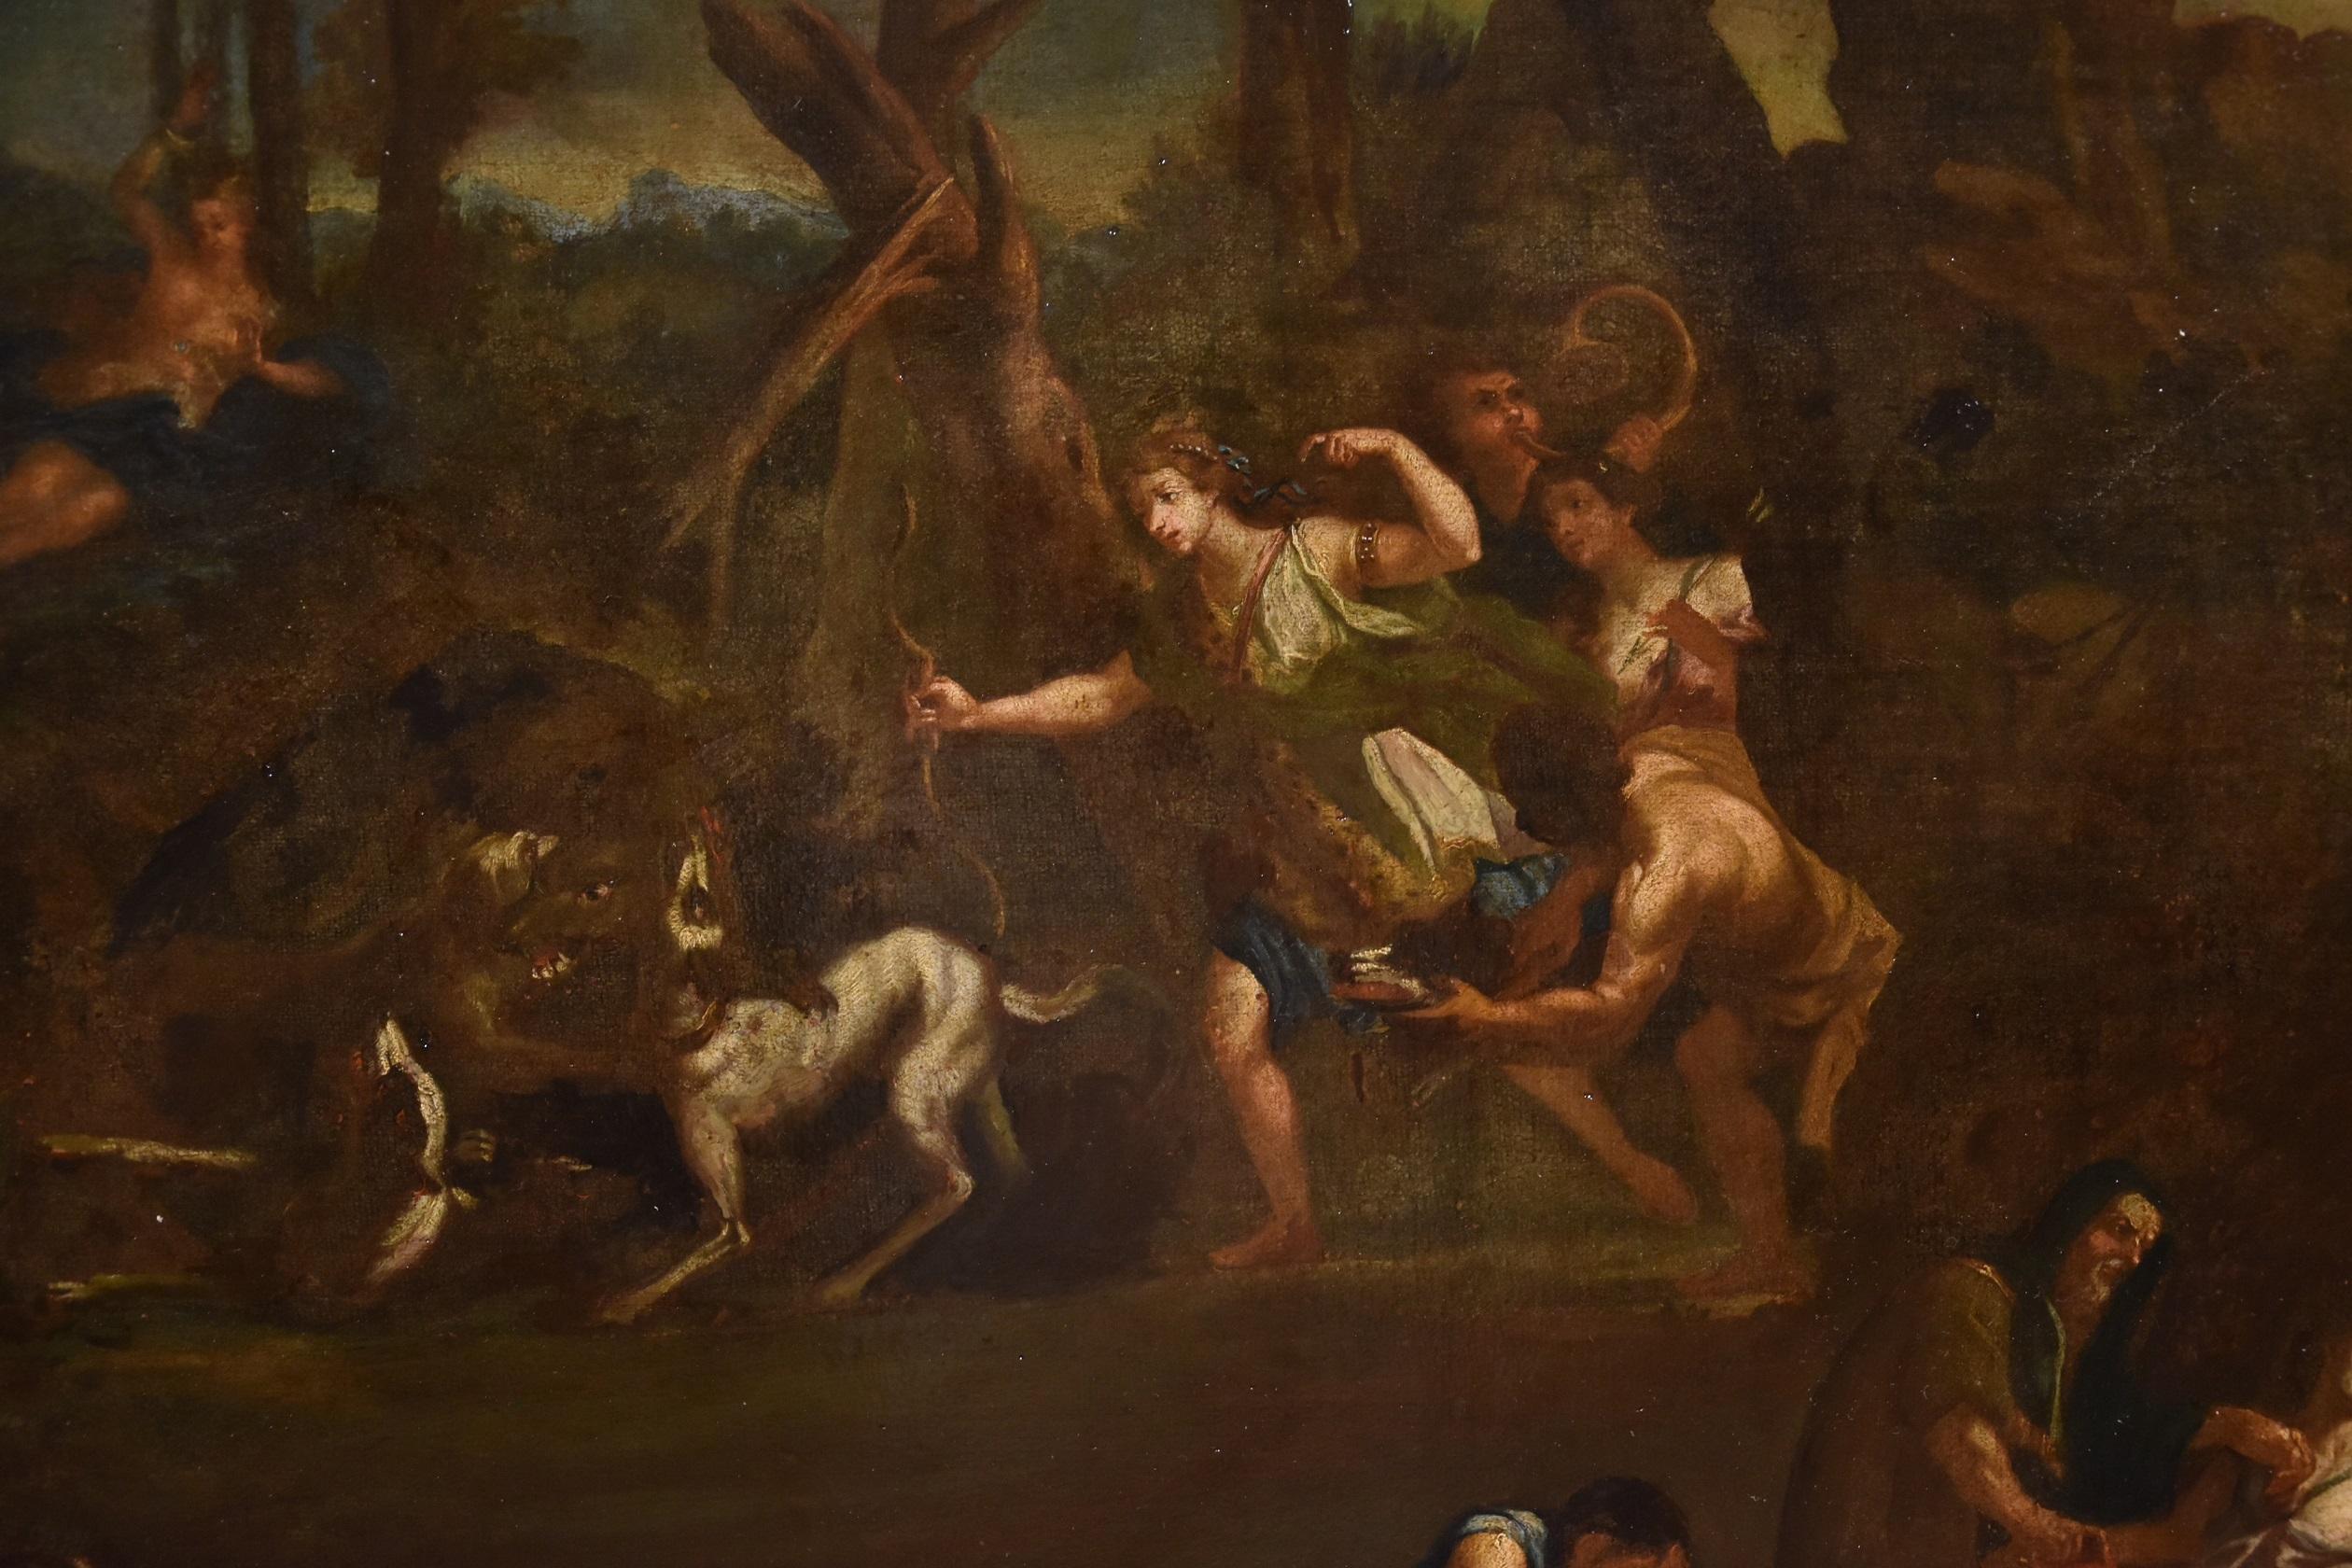 Bon Boullogne (Paris, 1649 - Paris, 1717) Werkstatt von
Episoden aus dem Mythos der Diana

ölgemälde auf Leinwand
Abmessungen: 84 x 114 cm.
mit antikem Rahmen 100 x 132 cm.

Das schöne Gemälde zeigt eine Reihe von Episoden aus dem Mythos der Göttin